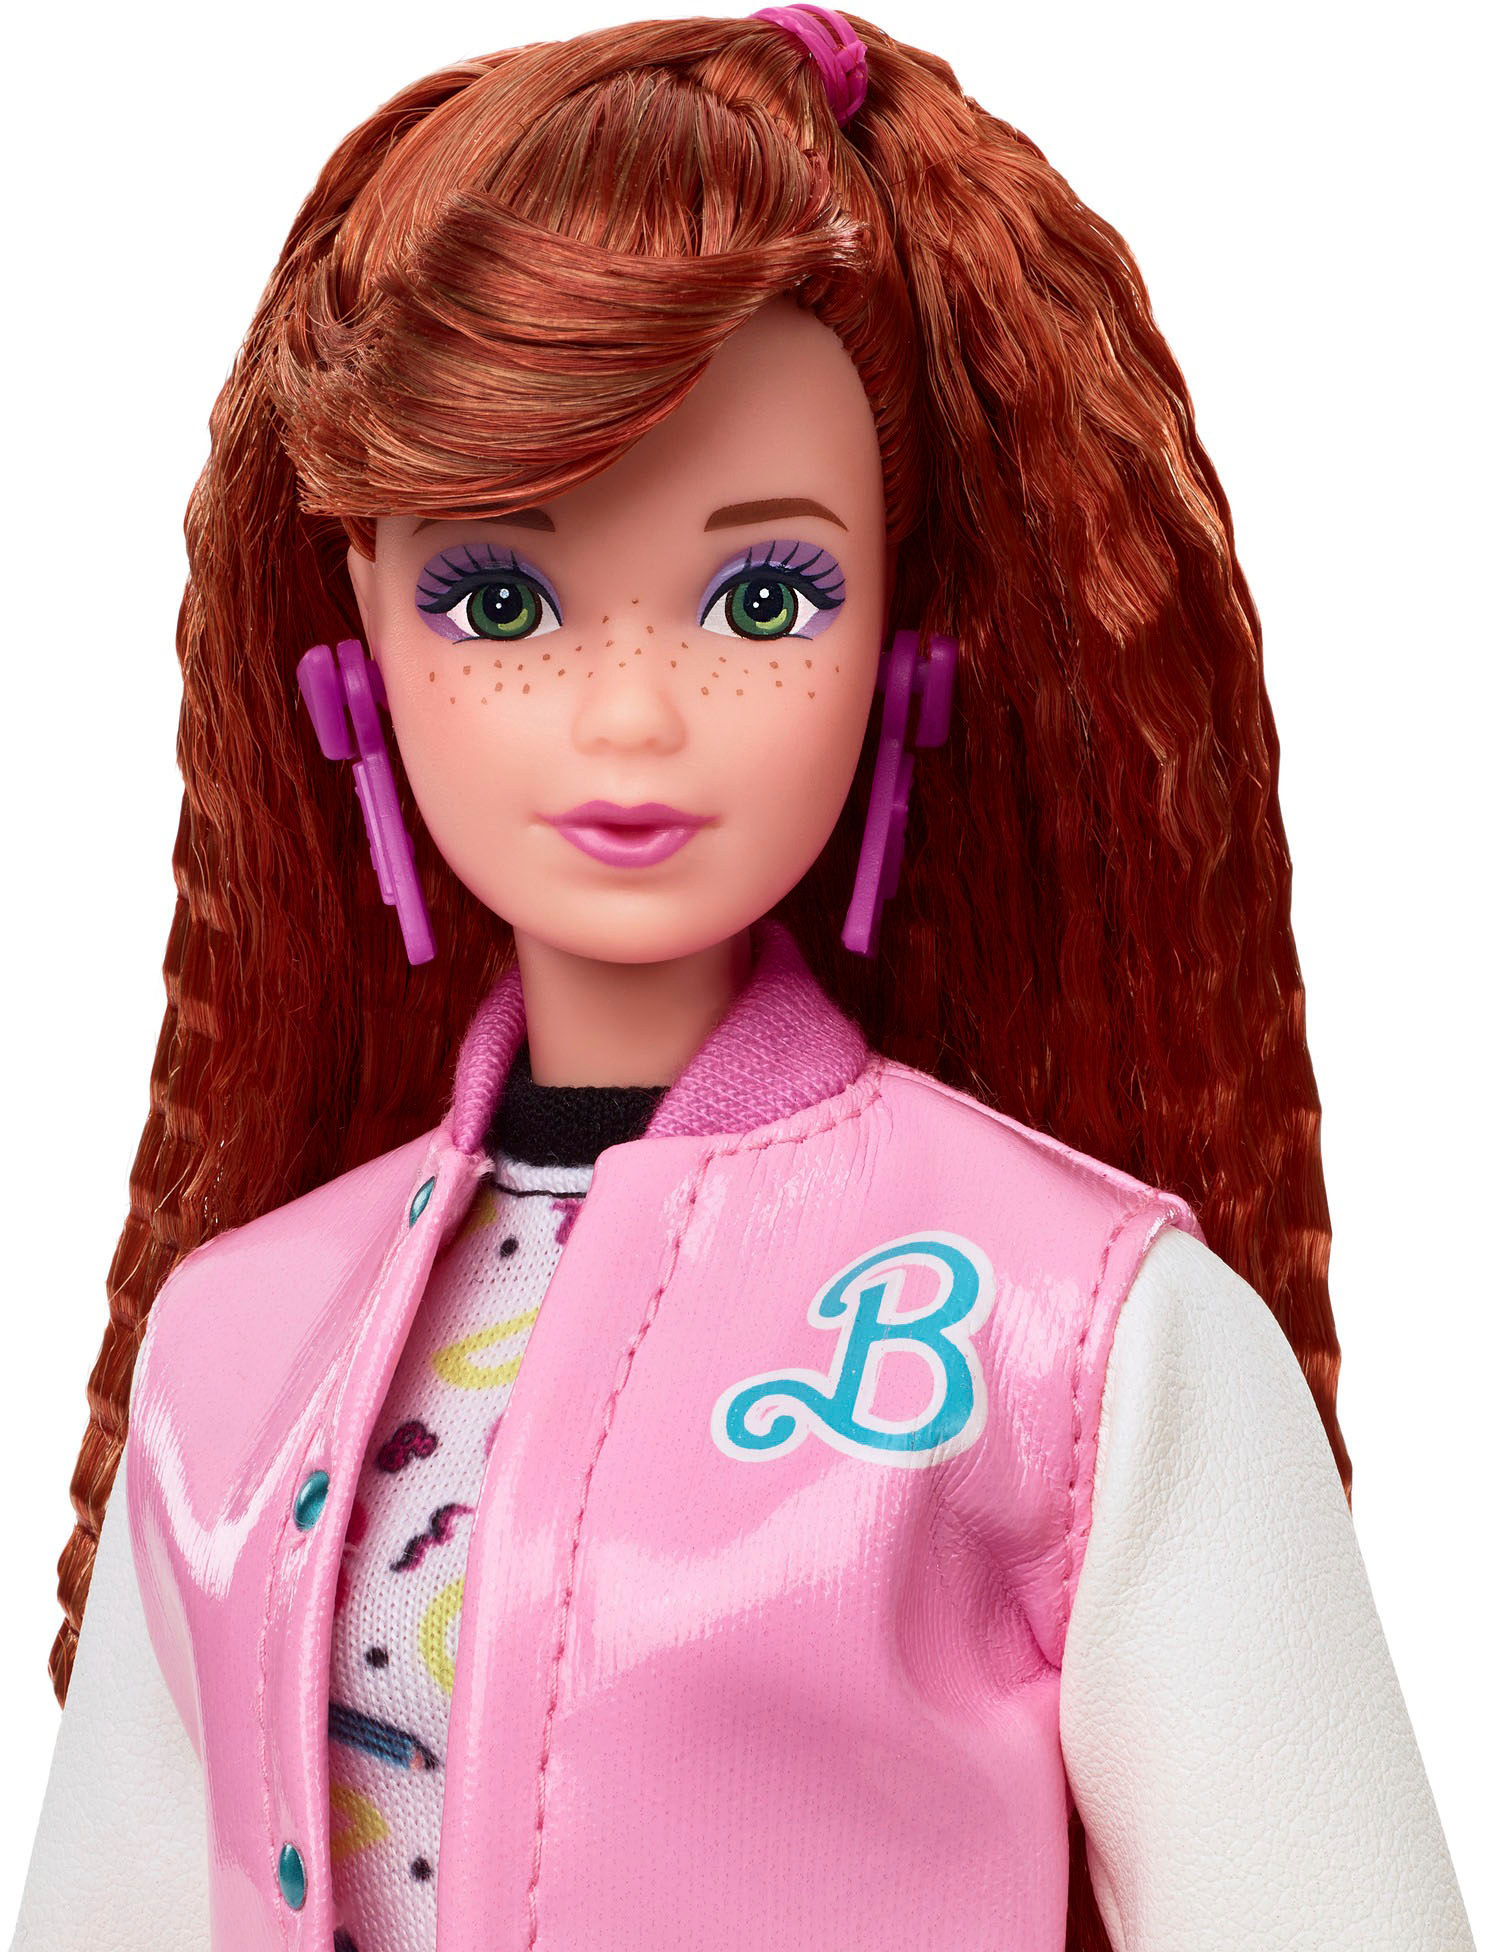 Lief Aannames, aannames. Raad eens persoonlijkheid Barbie Rewind 80's Edition Schoolin' Around Doll HBY13 - Best Buy